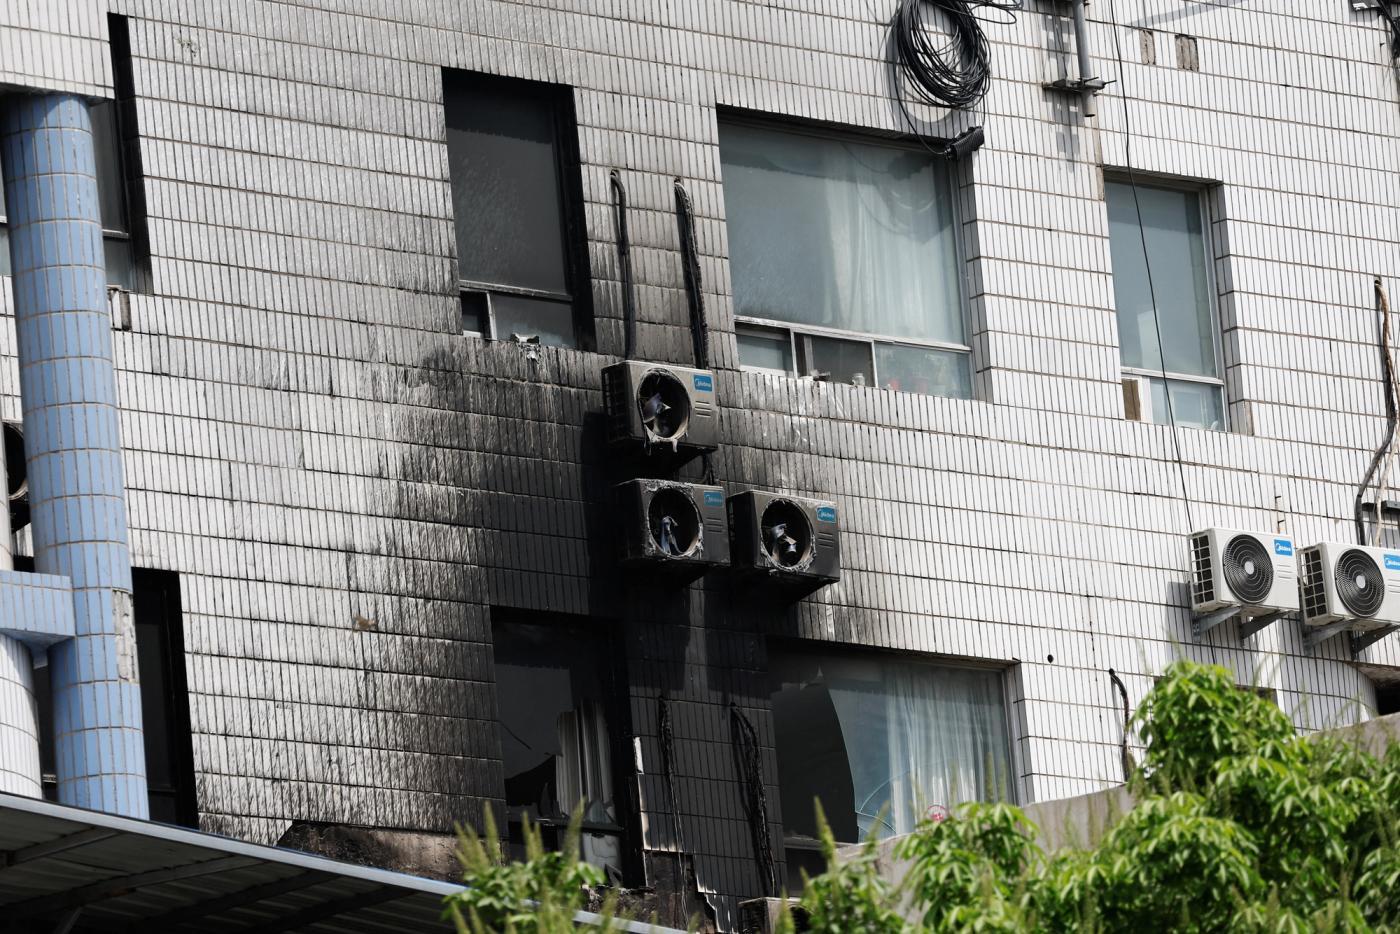 Beijing hospital fire